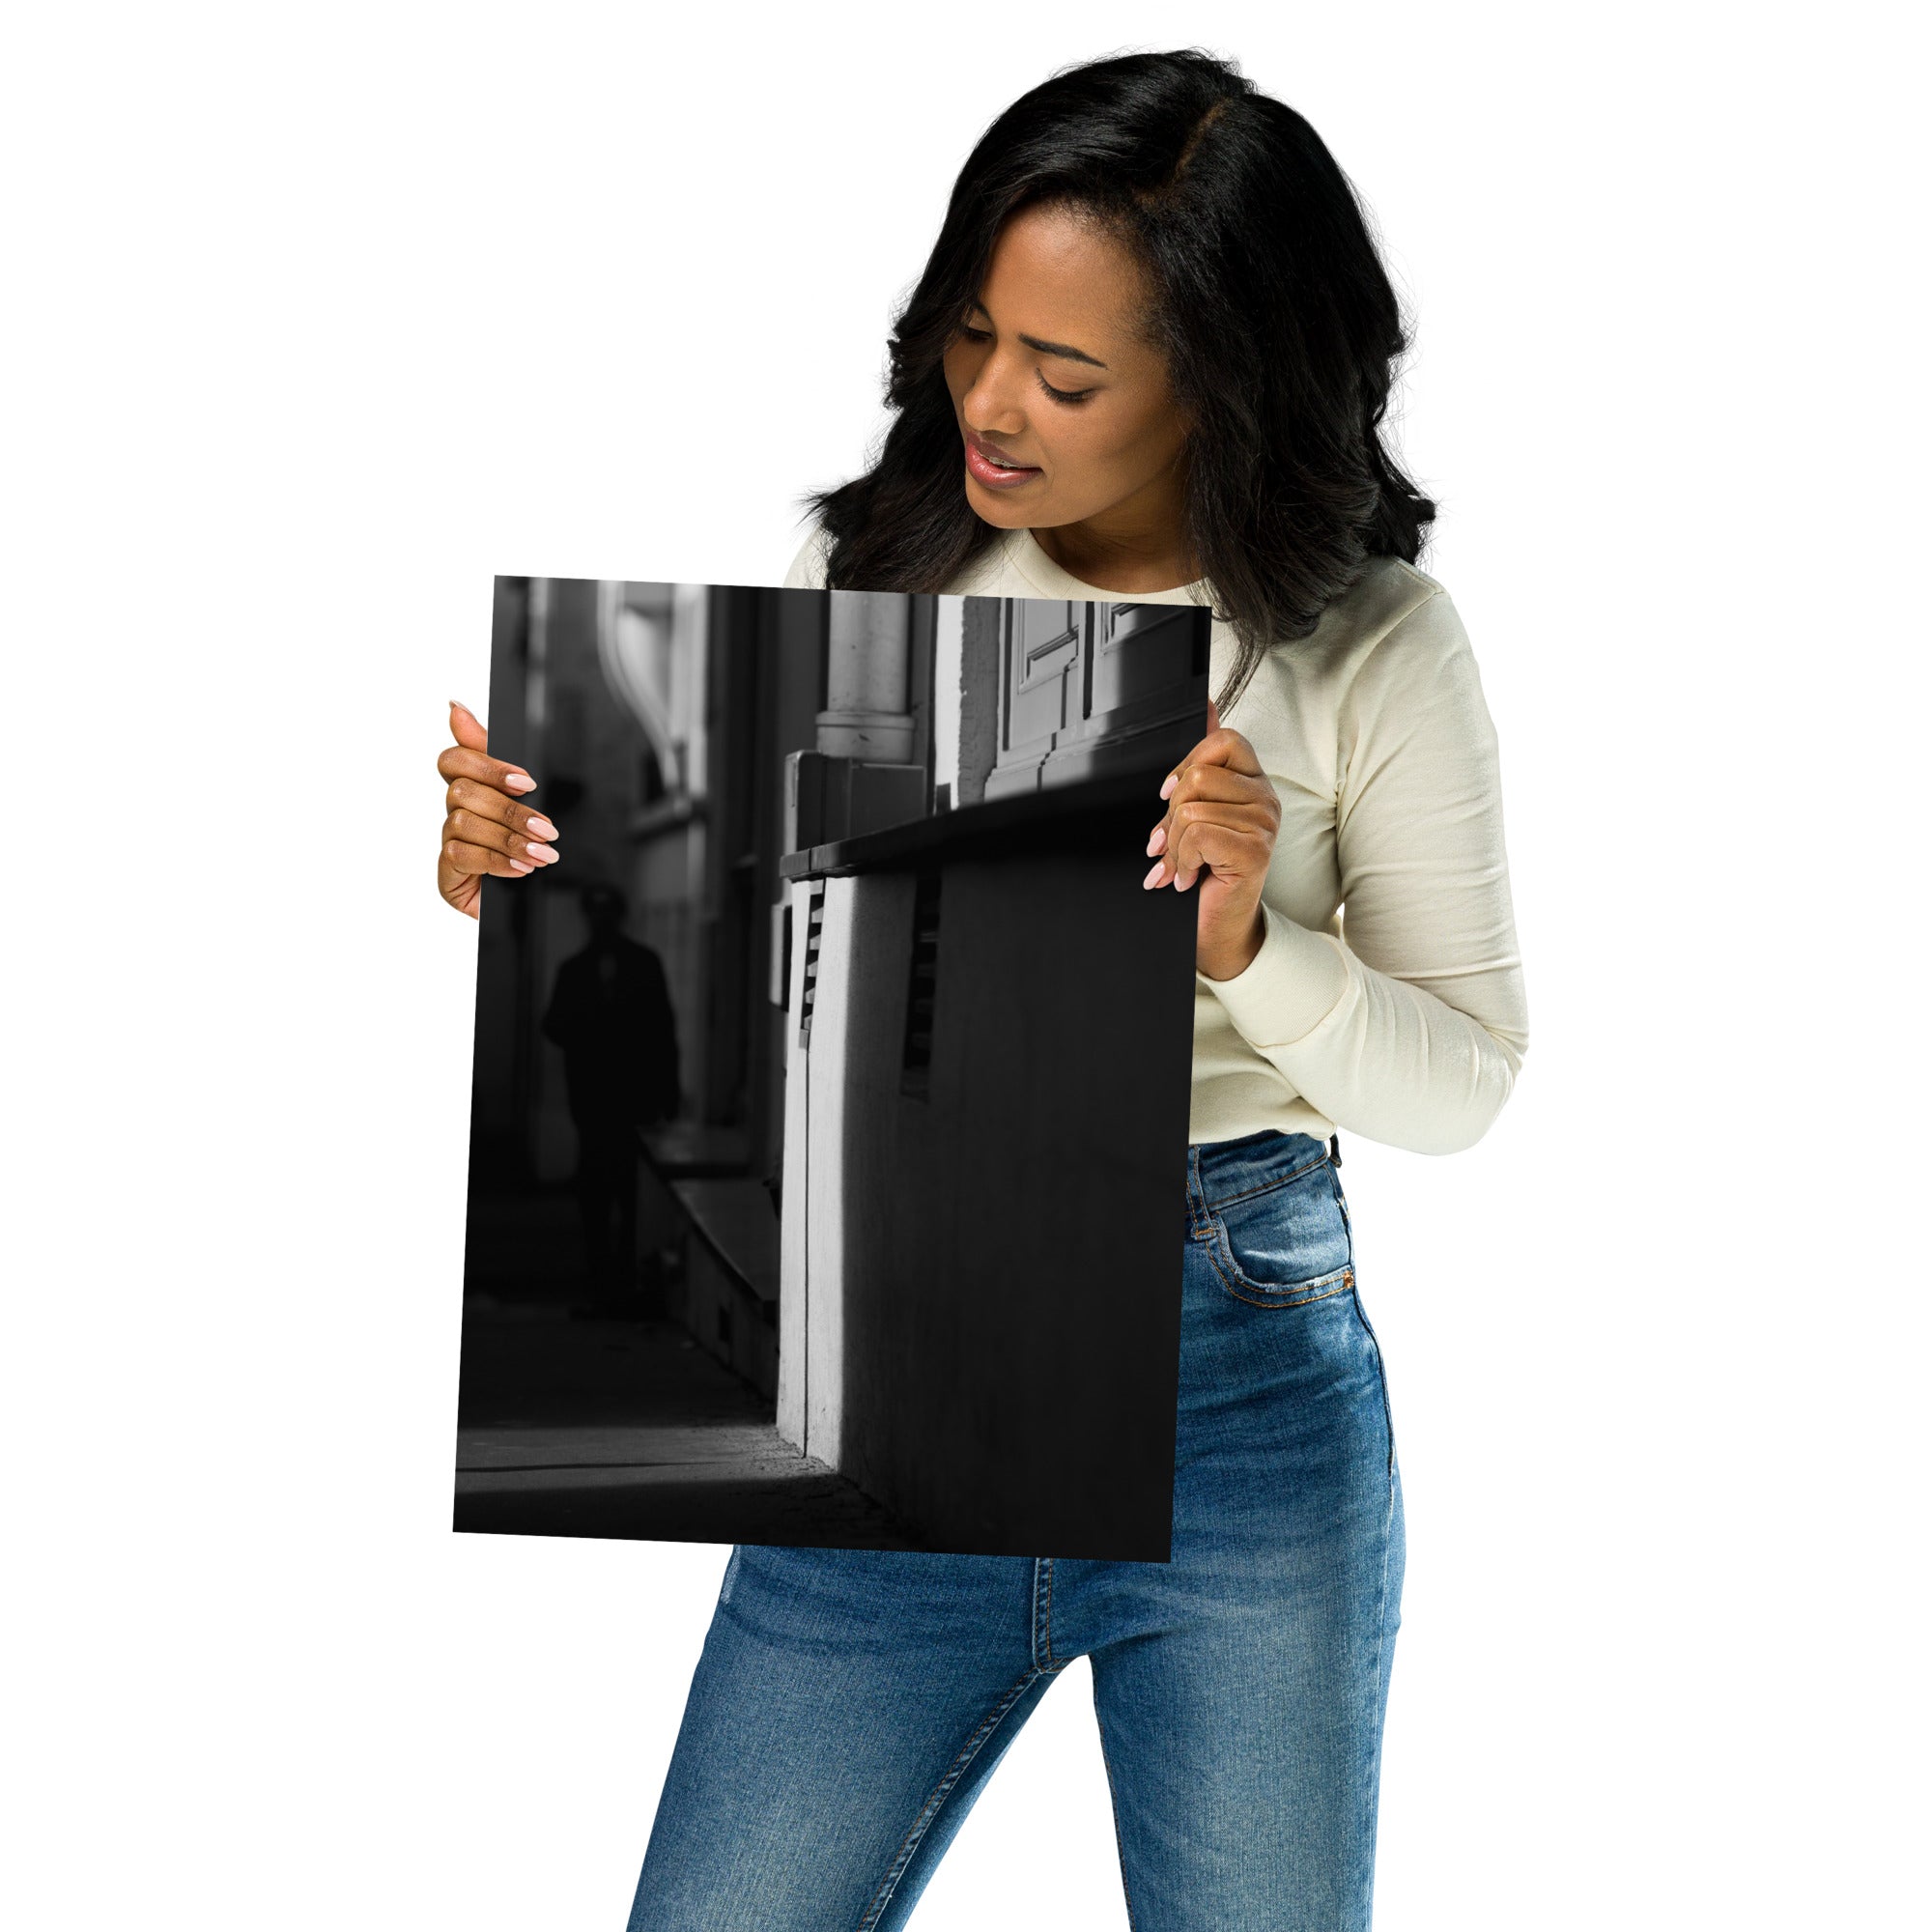 Poster de photographie artistique en noir et blanc représentant un jeu de lumière et d'ombre dans une rue